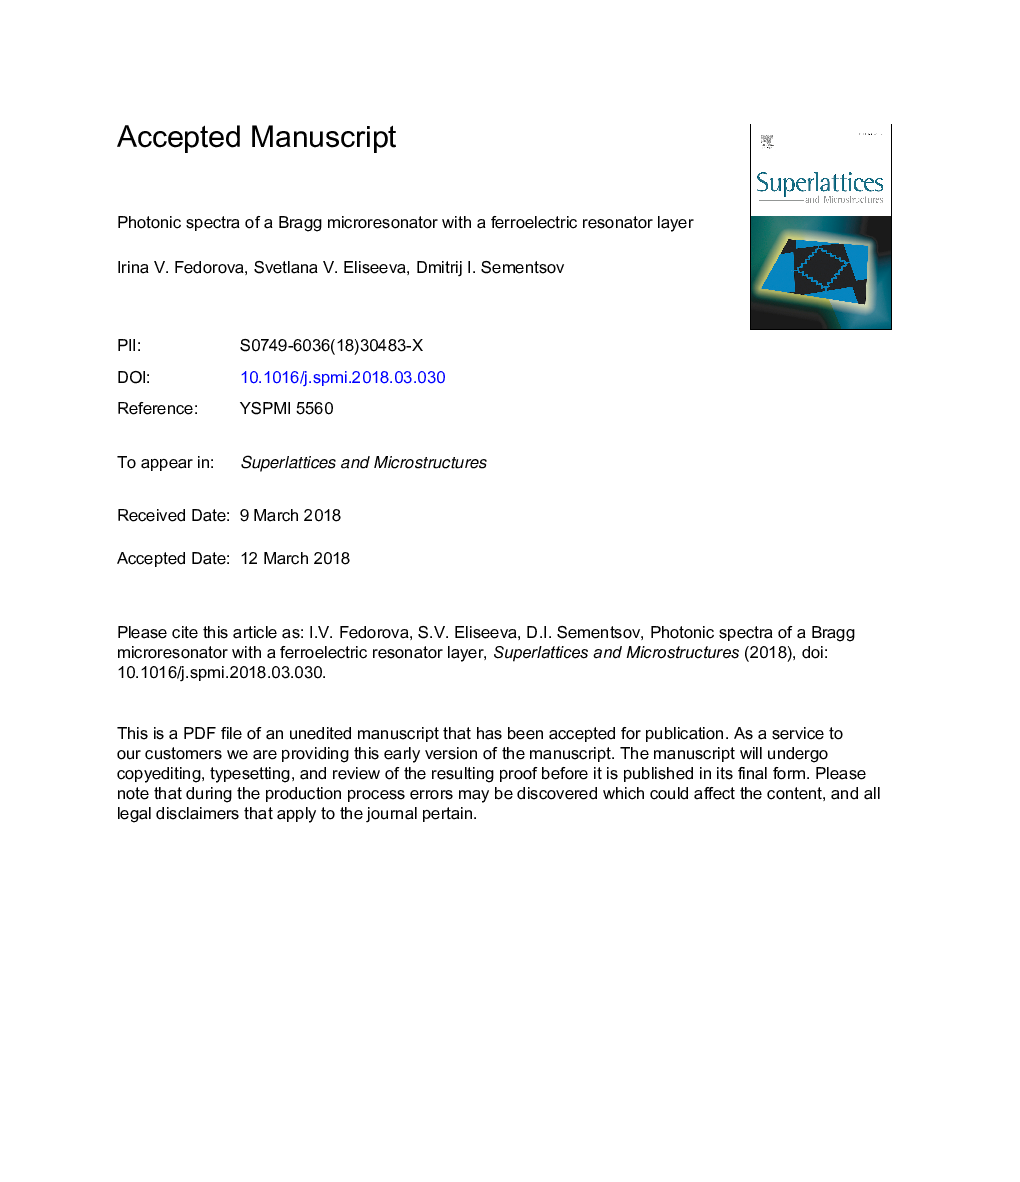 طیف های فوتونی یک میکروورزوناتور برق با یک لایه ی رزوناتور فرآیند 